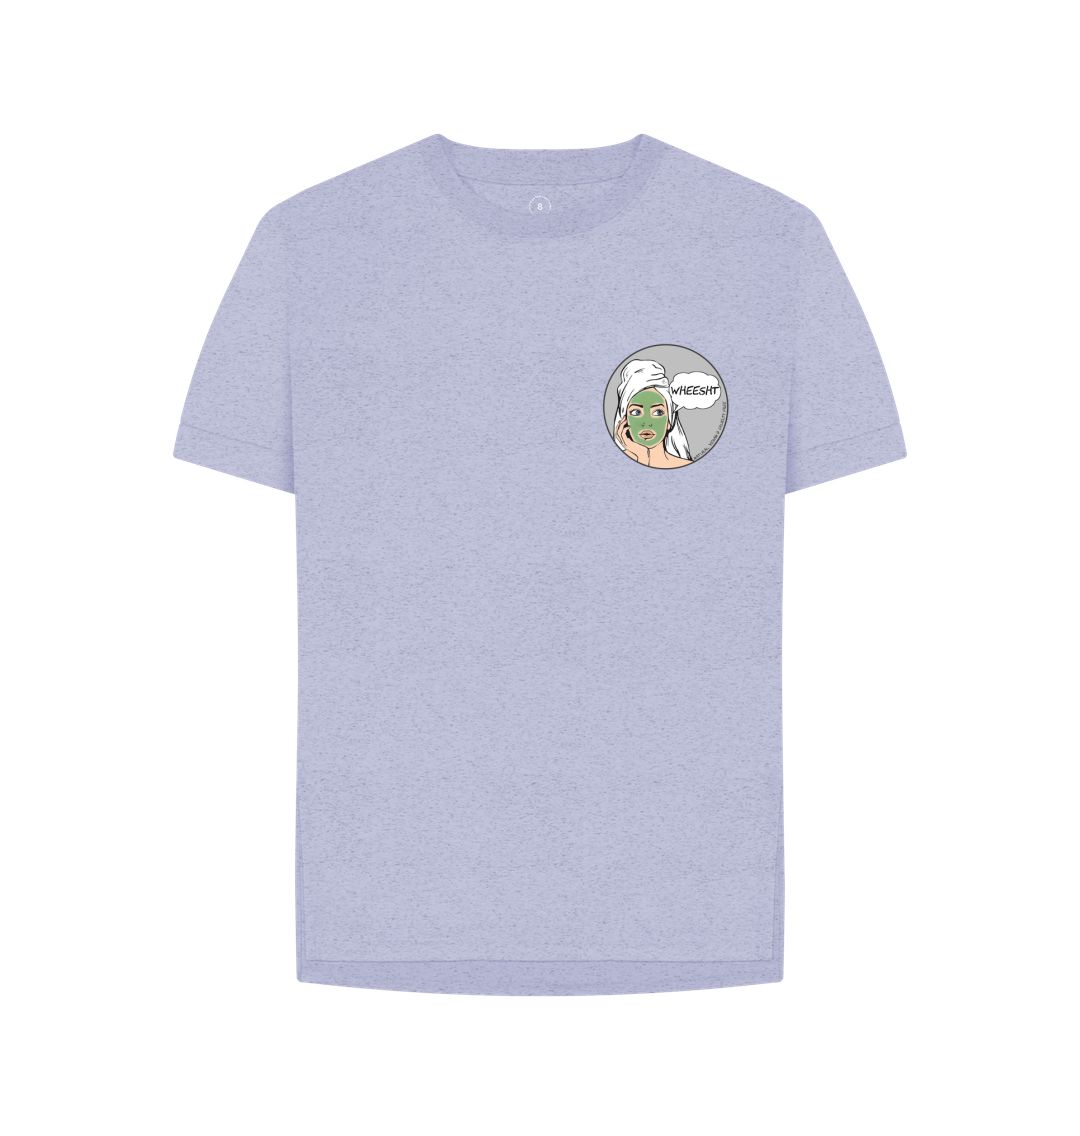 Lavender Wheesht Apparel - T-shirt